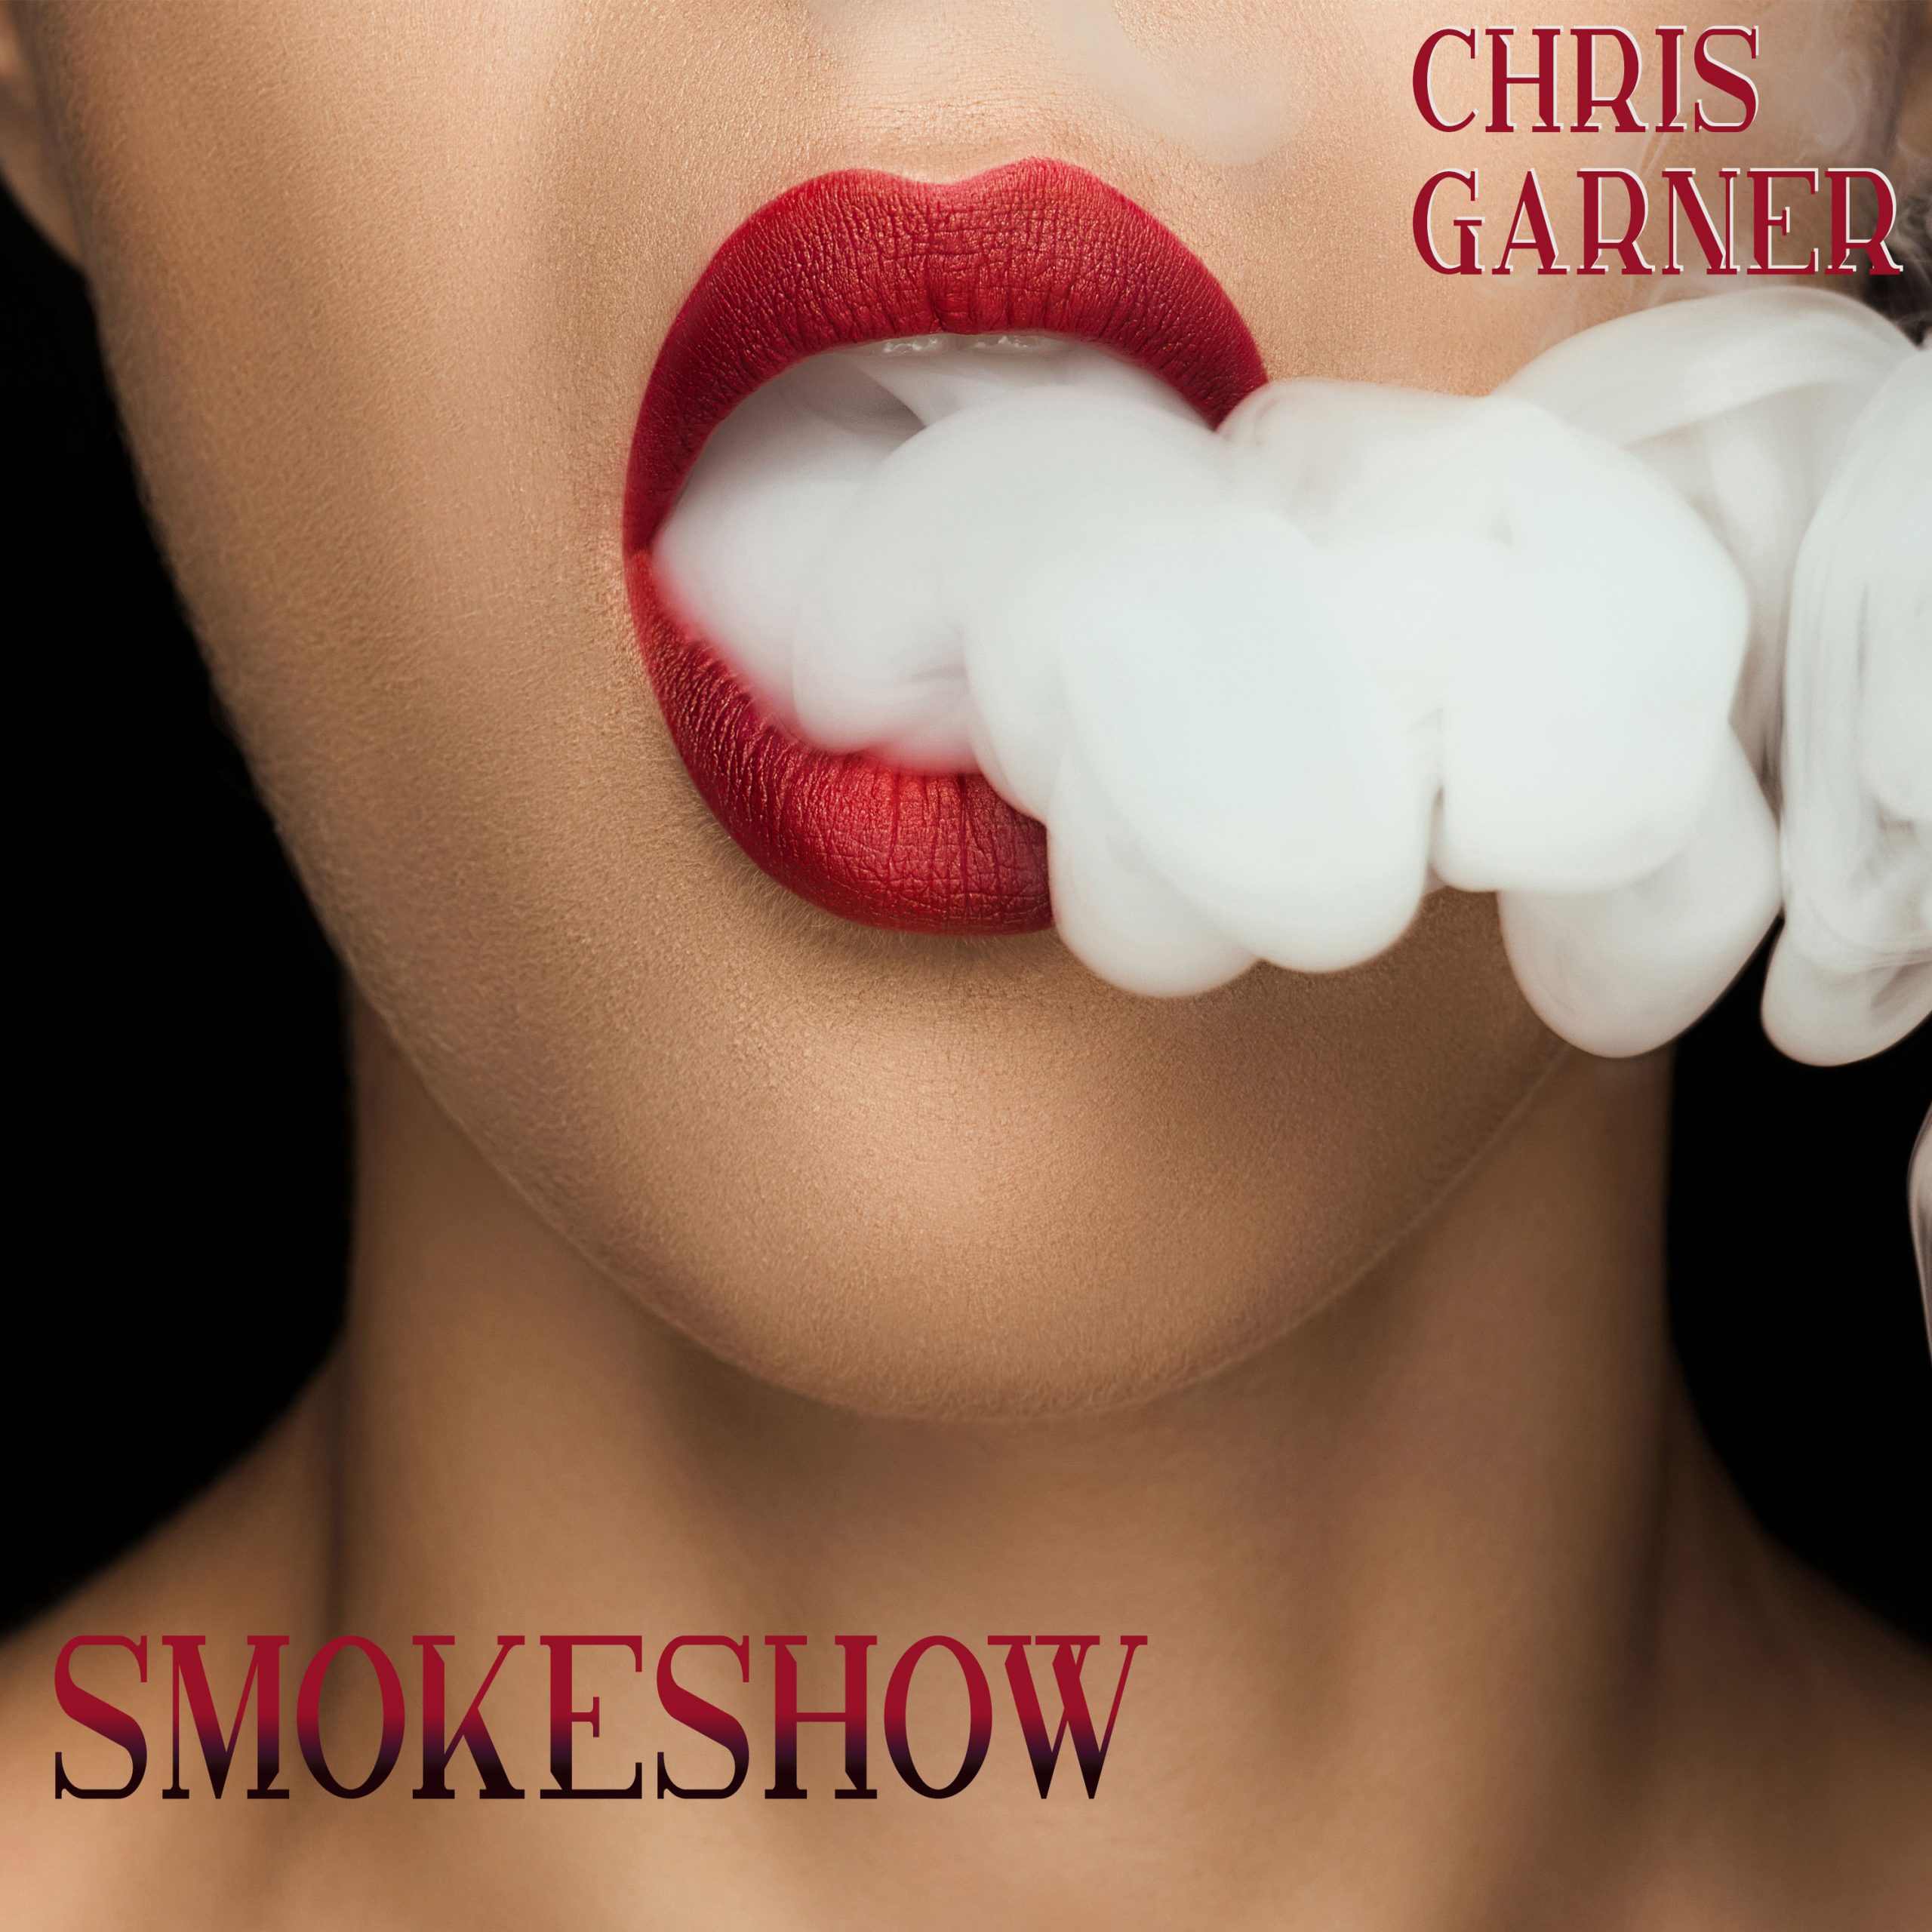 "Smokeshow"